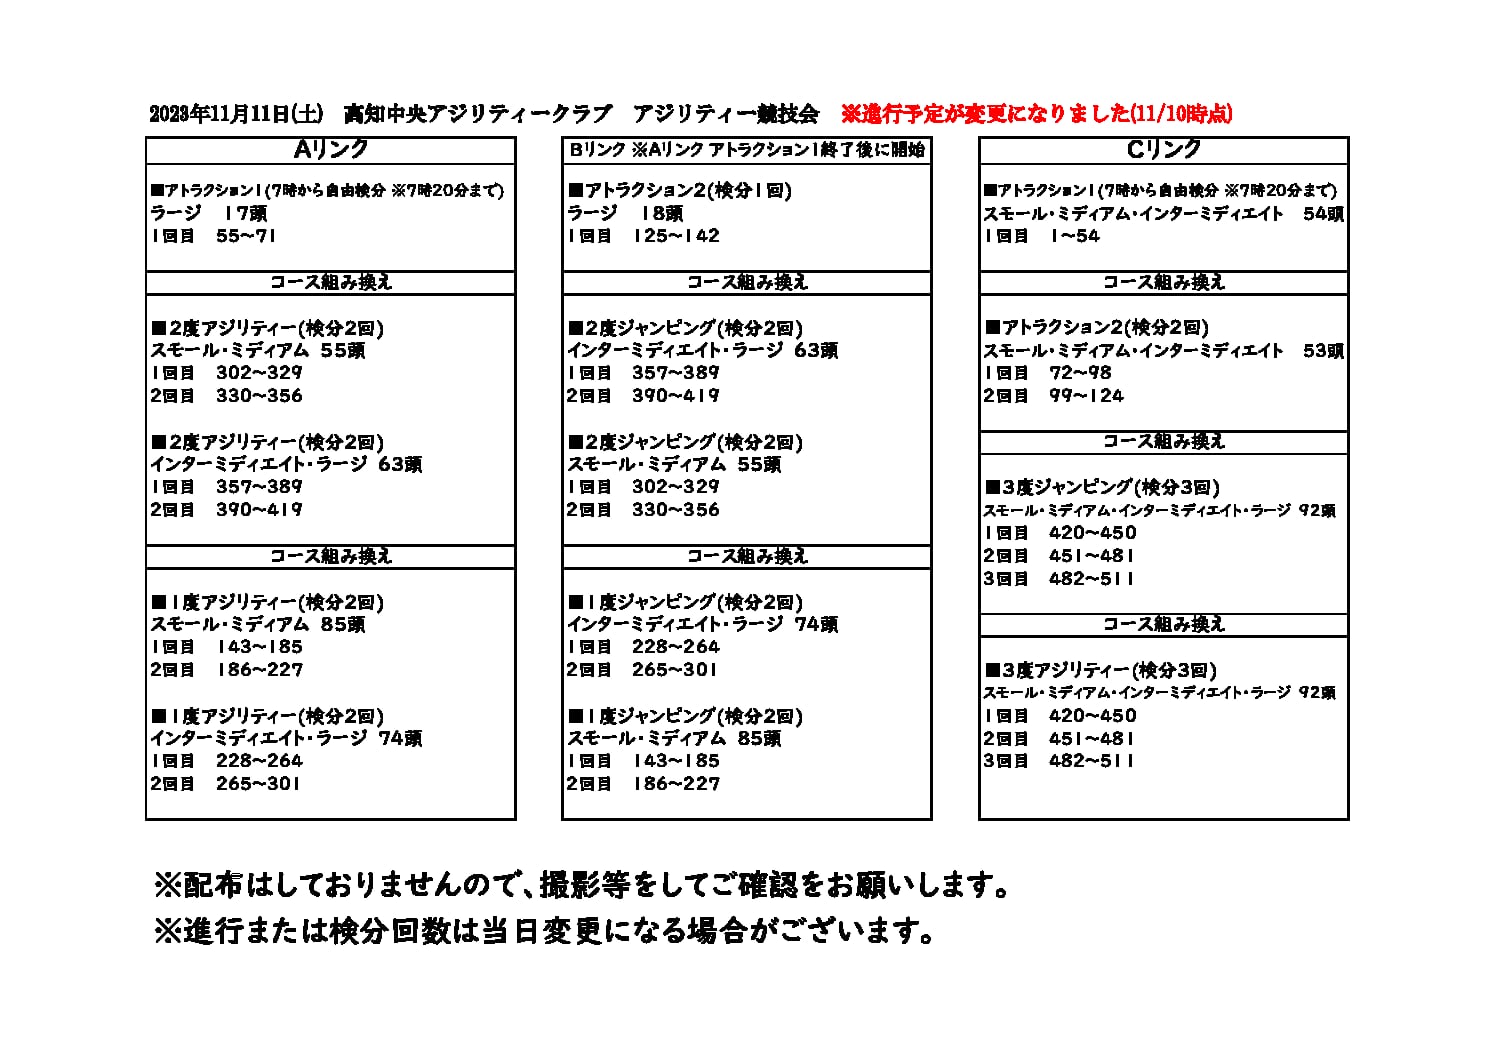 【重要】11/11(土)高知中央アジリティークラブアジリティー競技会進行予定表変更について